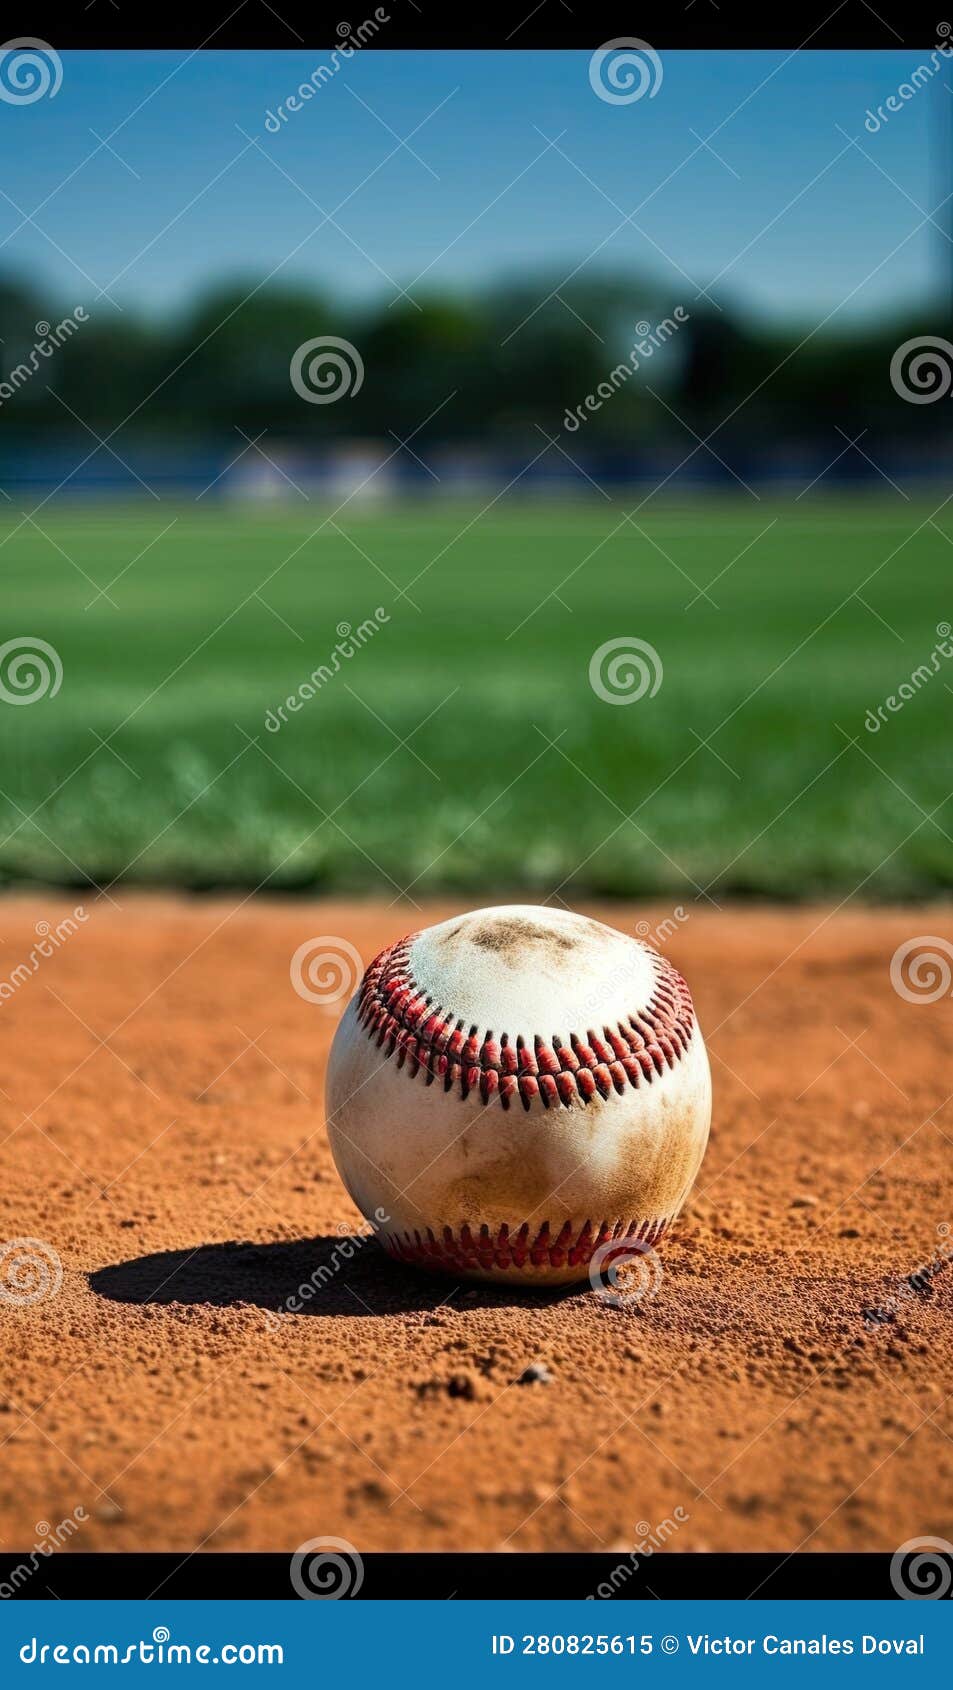 Baseball Dirty Ball on Pitchers Mound. Stock Illustration ...